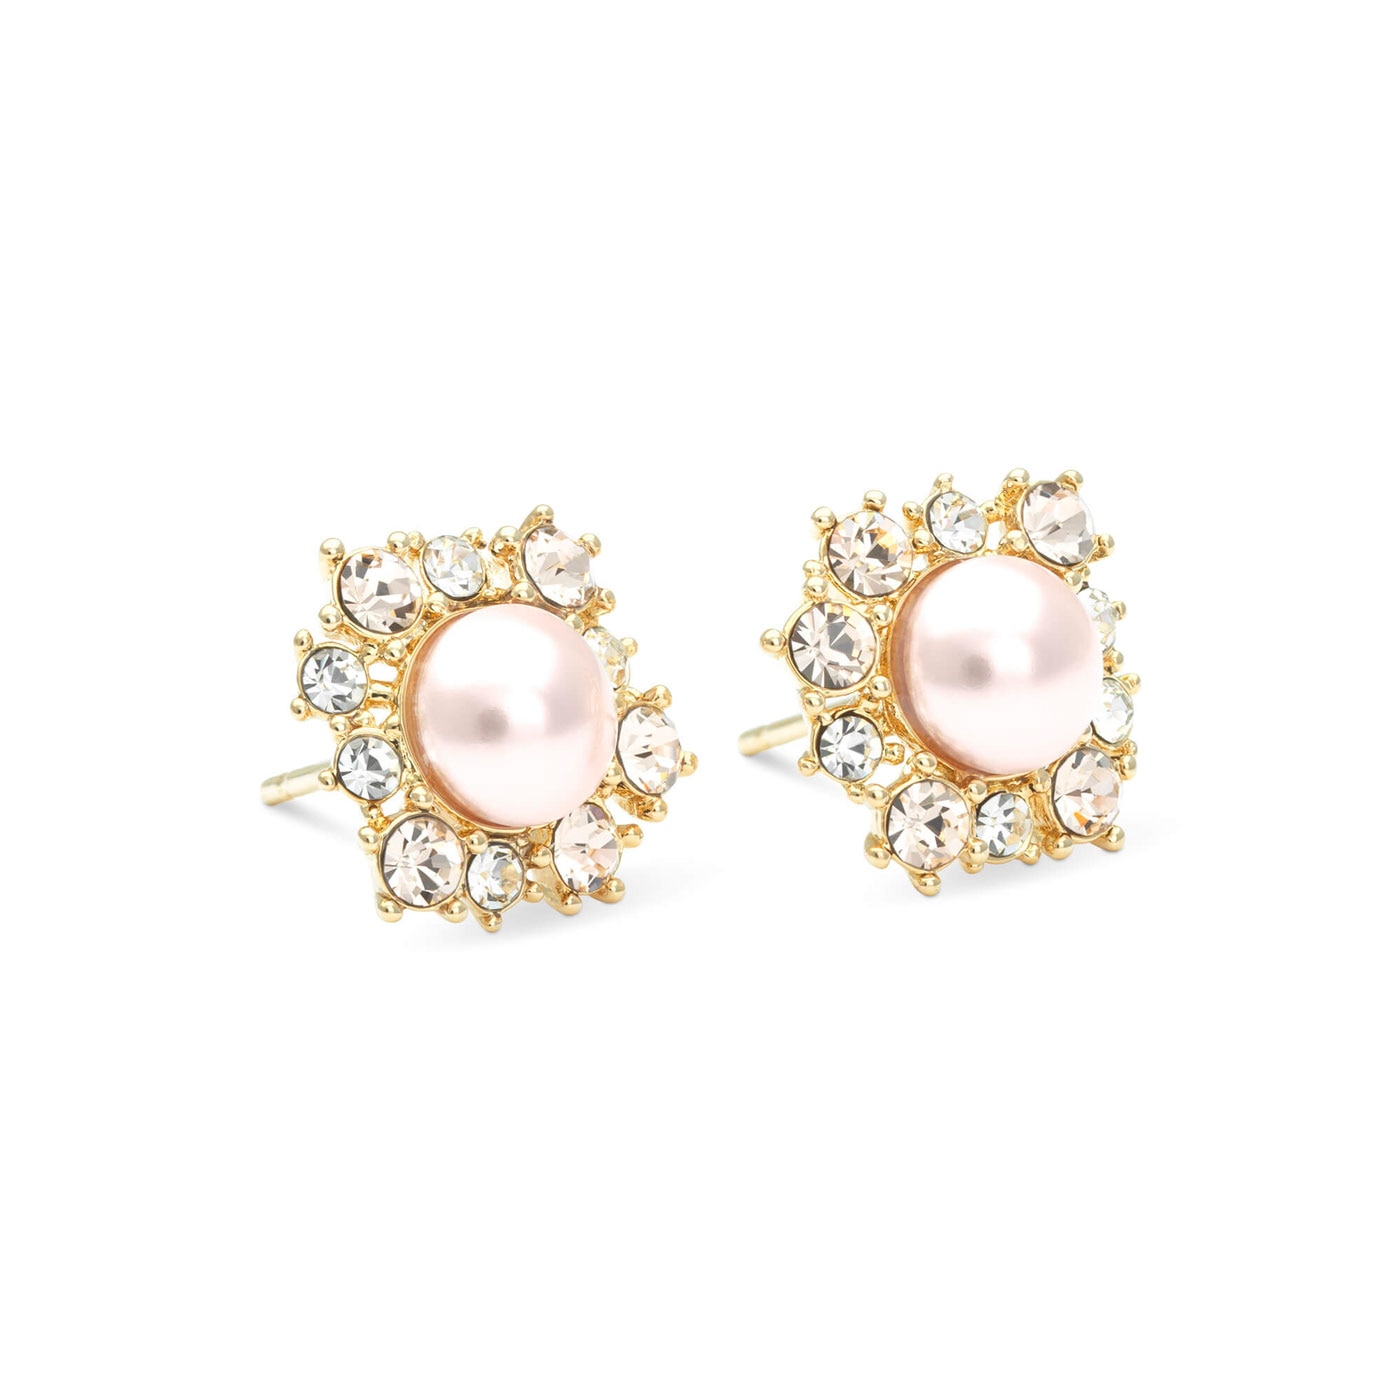 Emily pearl earrings - Rosaline